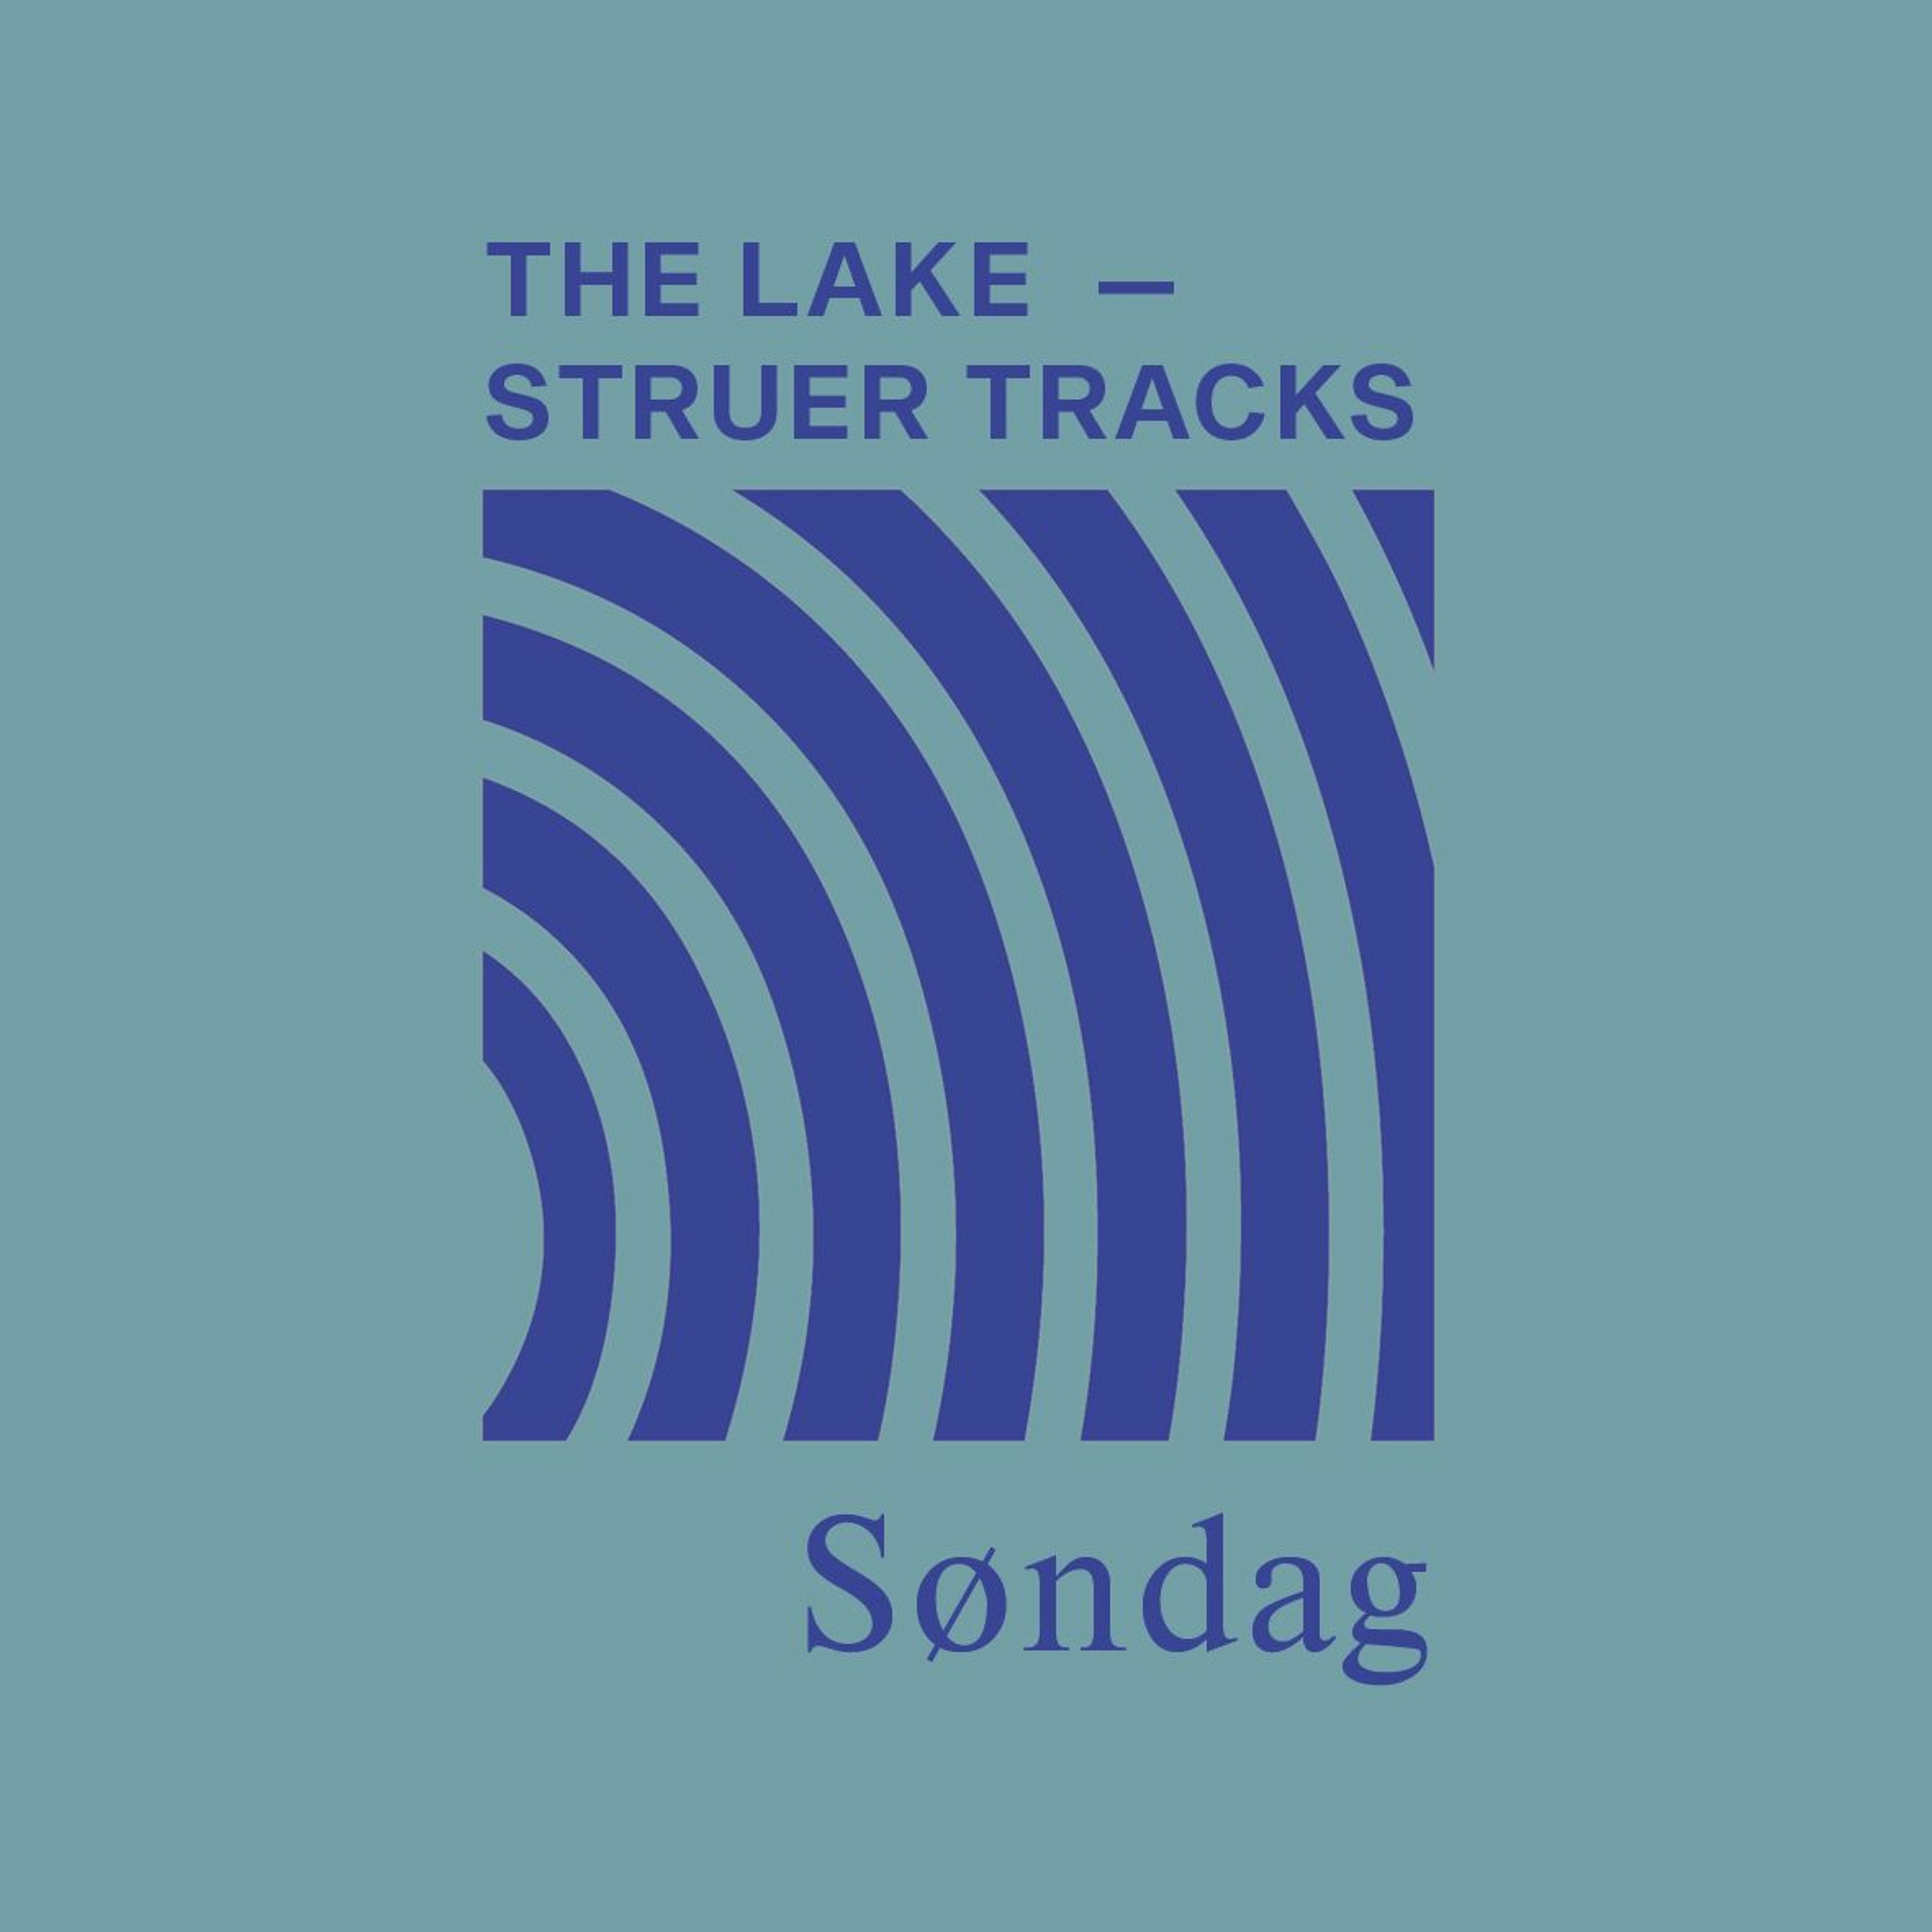 The Lake ⏤ Struer Tracks: Søndag